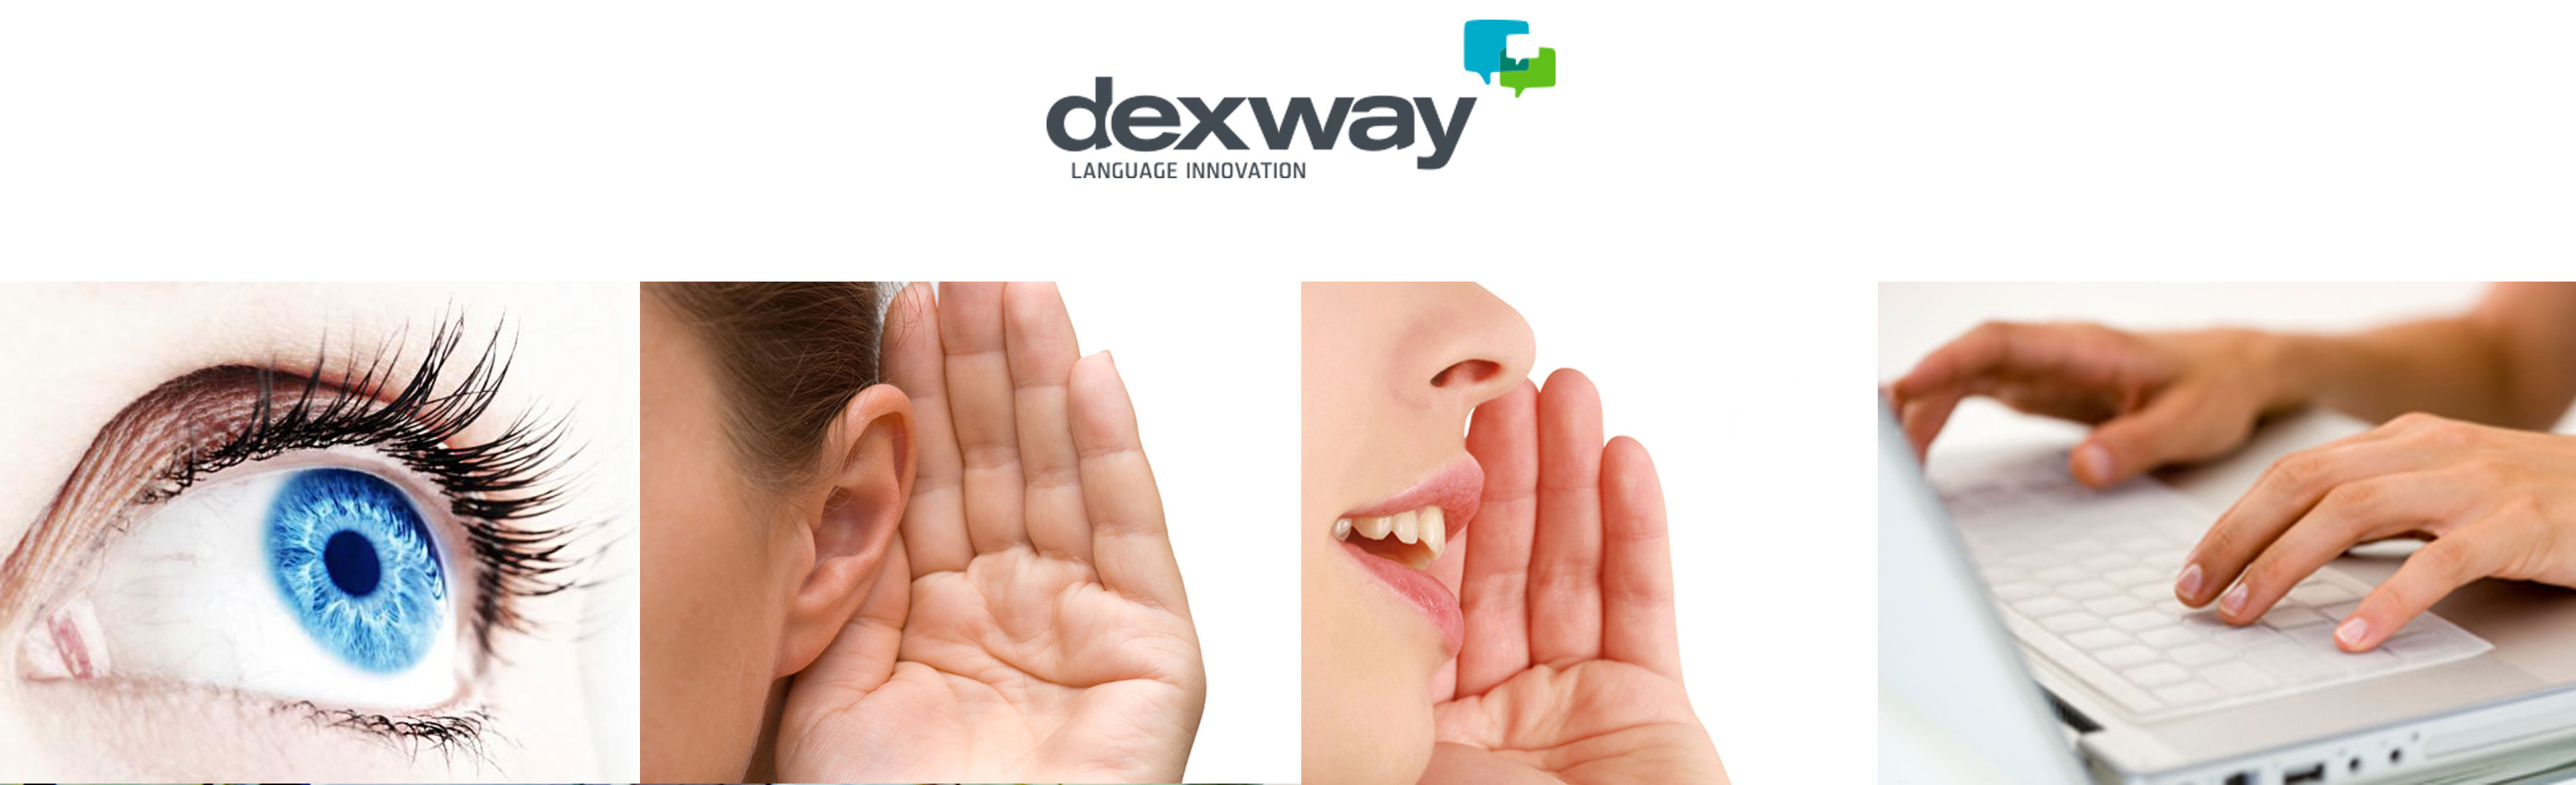 dexway-aprende idiomas